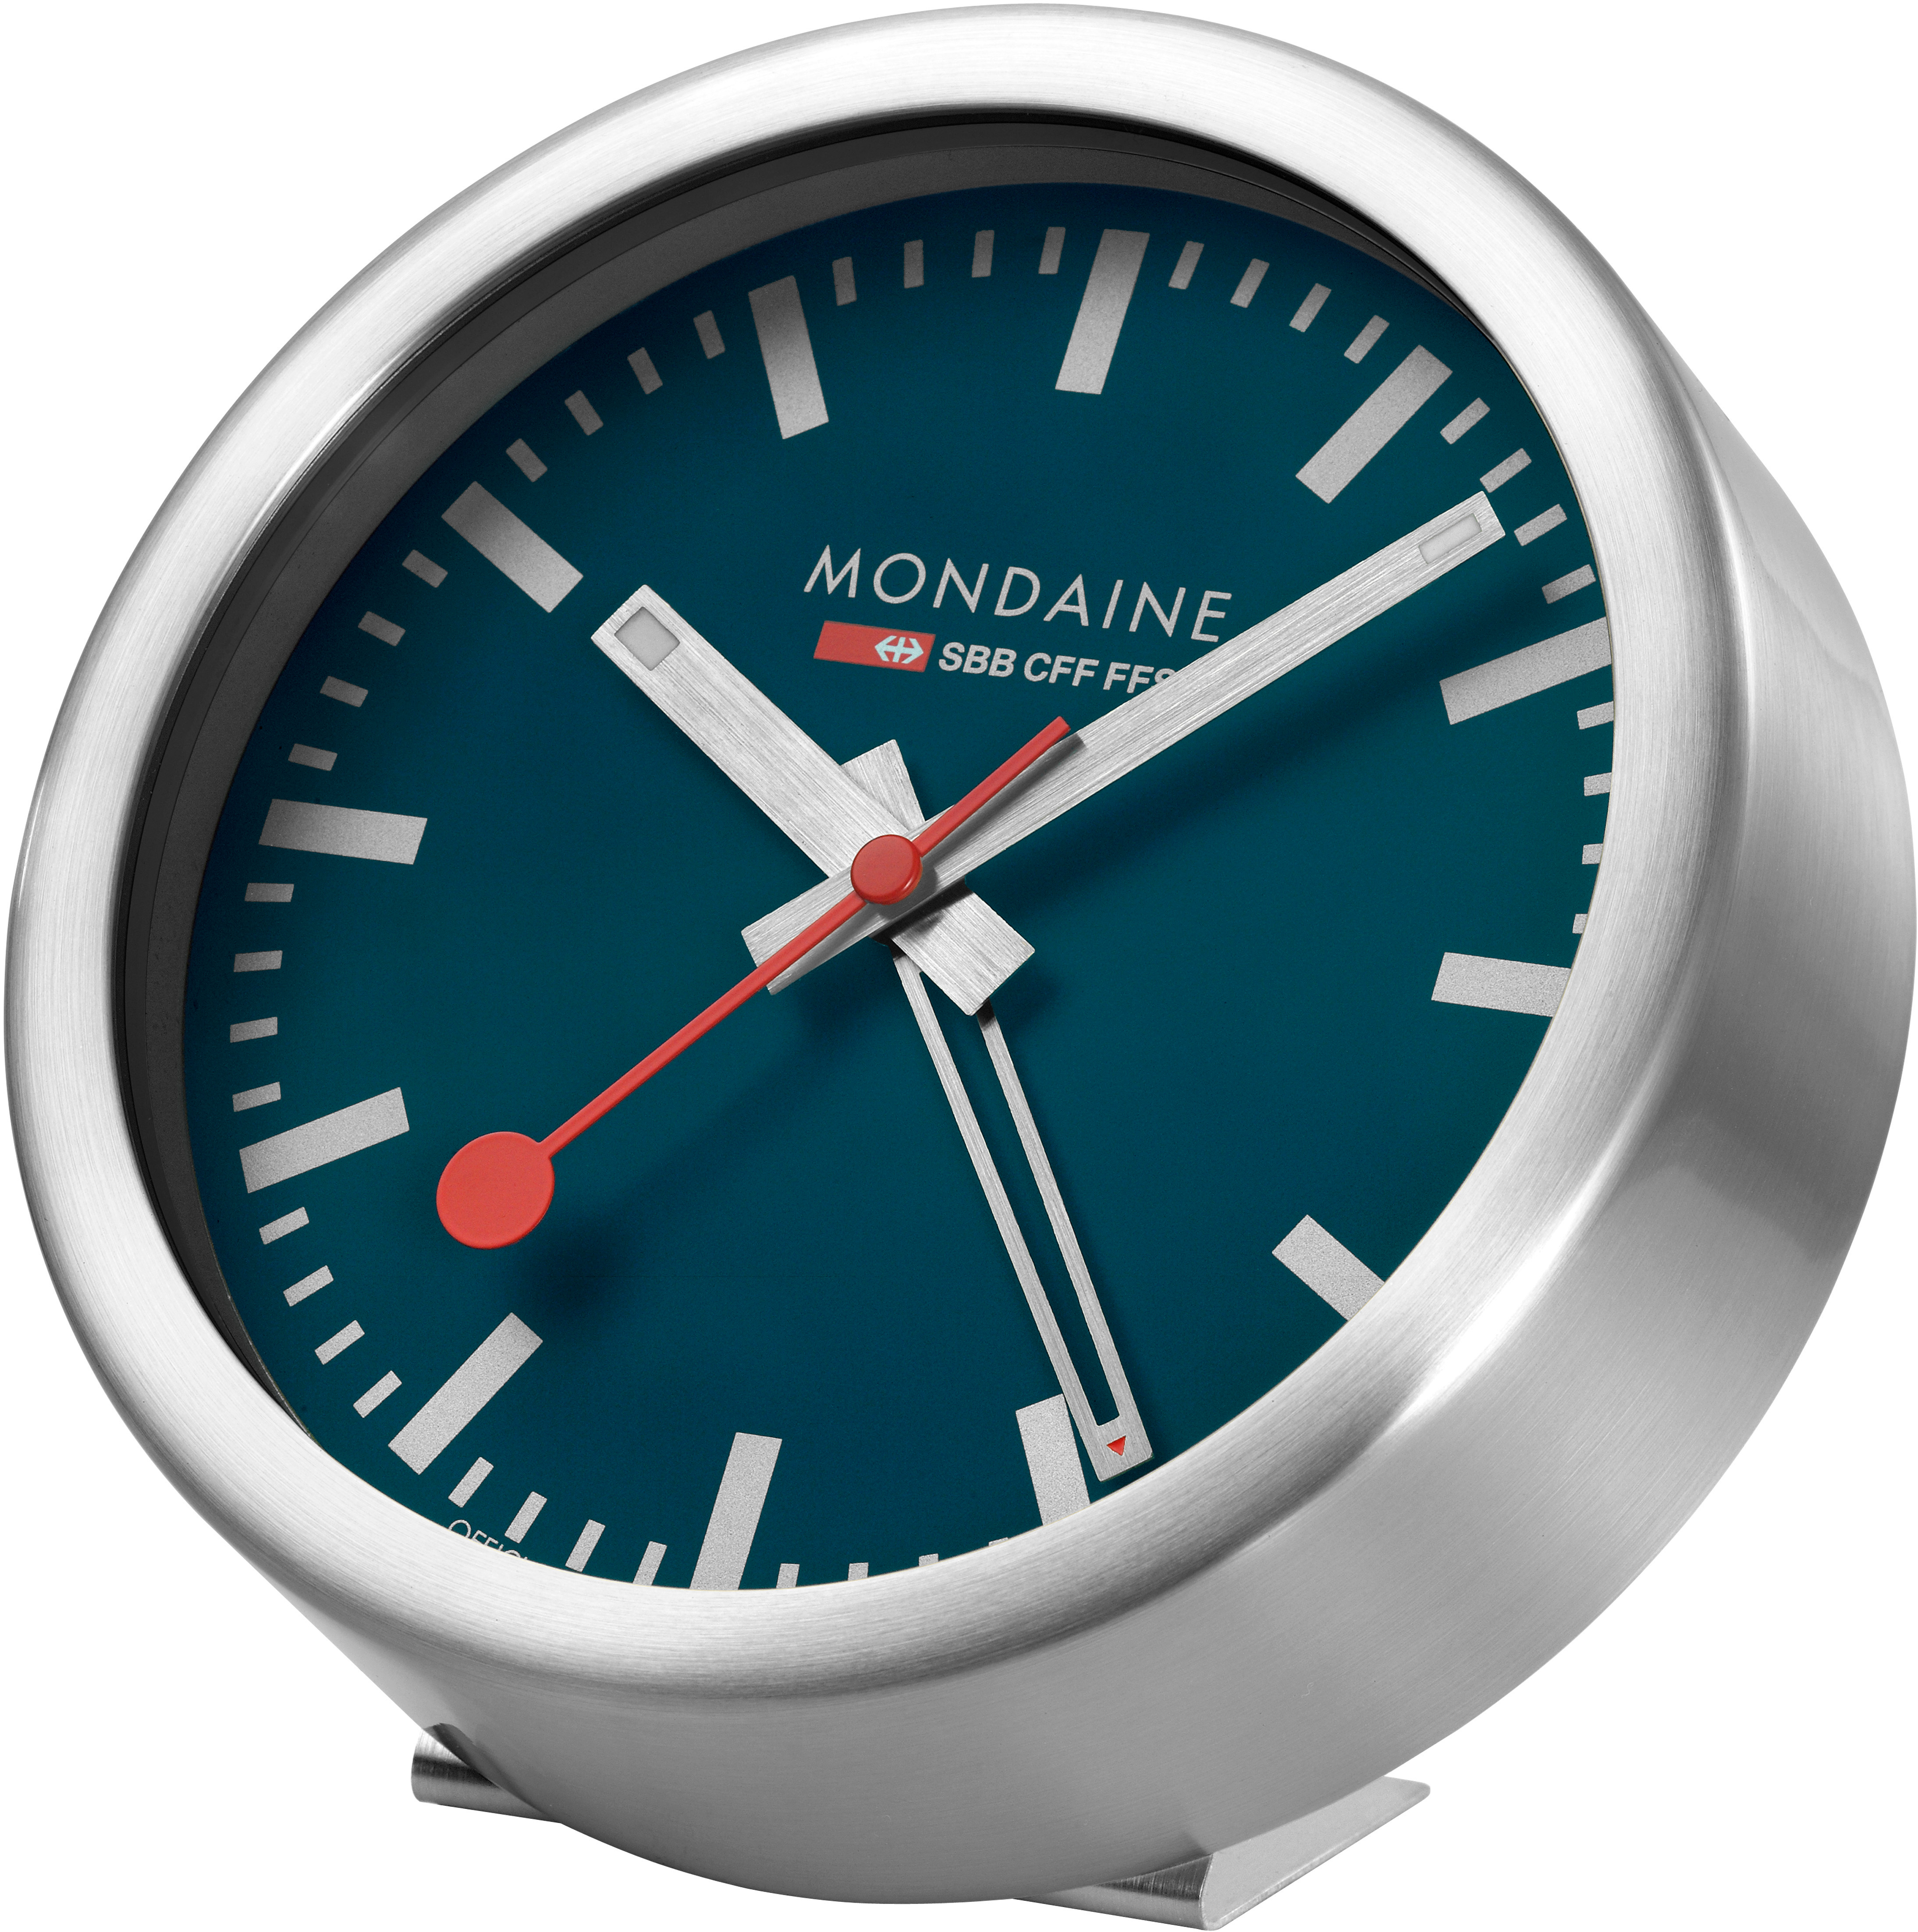 MONDAINE Mur / Horloge de table 125mm A997.46SBV.1 bleu, réveil